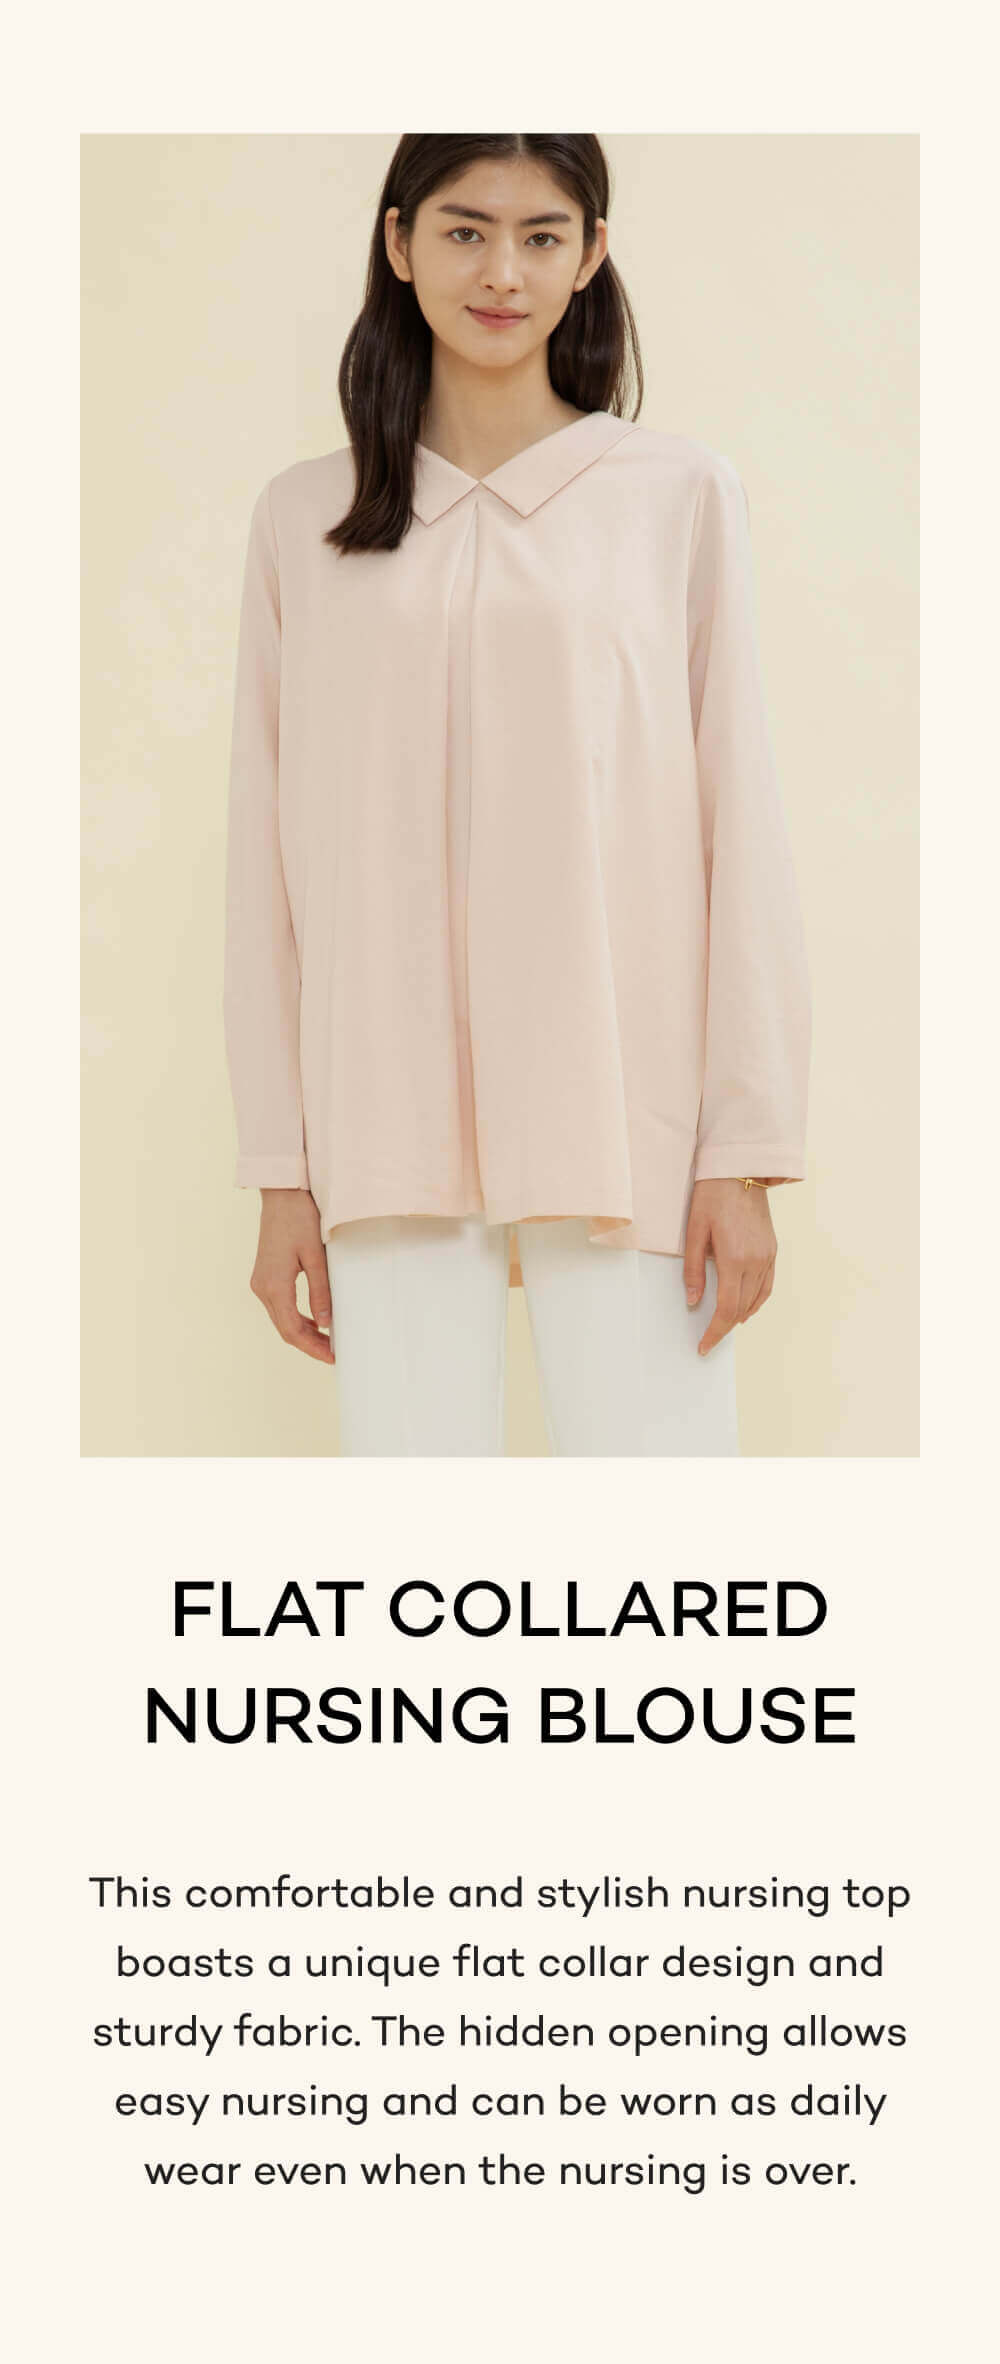 Flat Collared Nursing Blouse